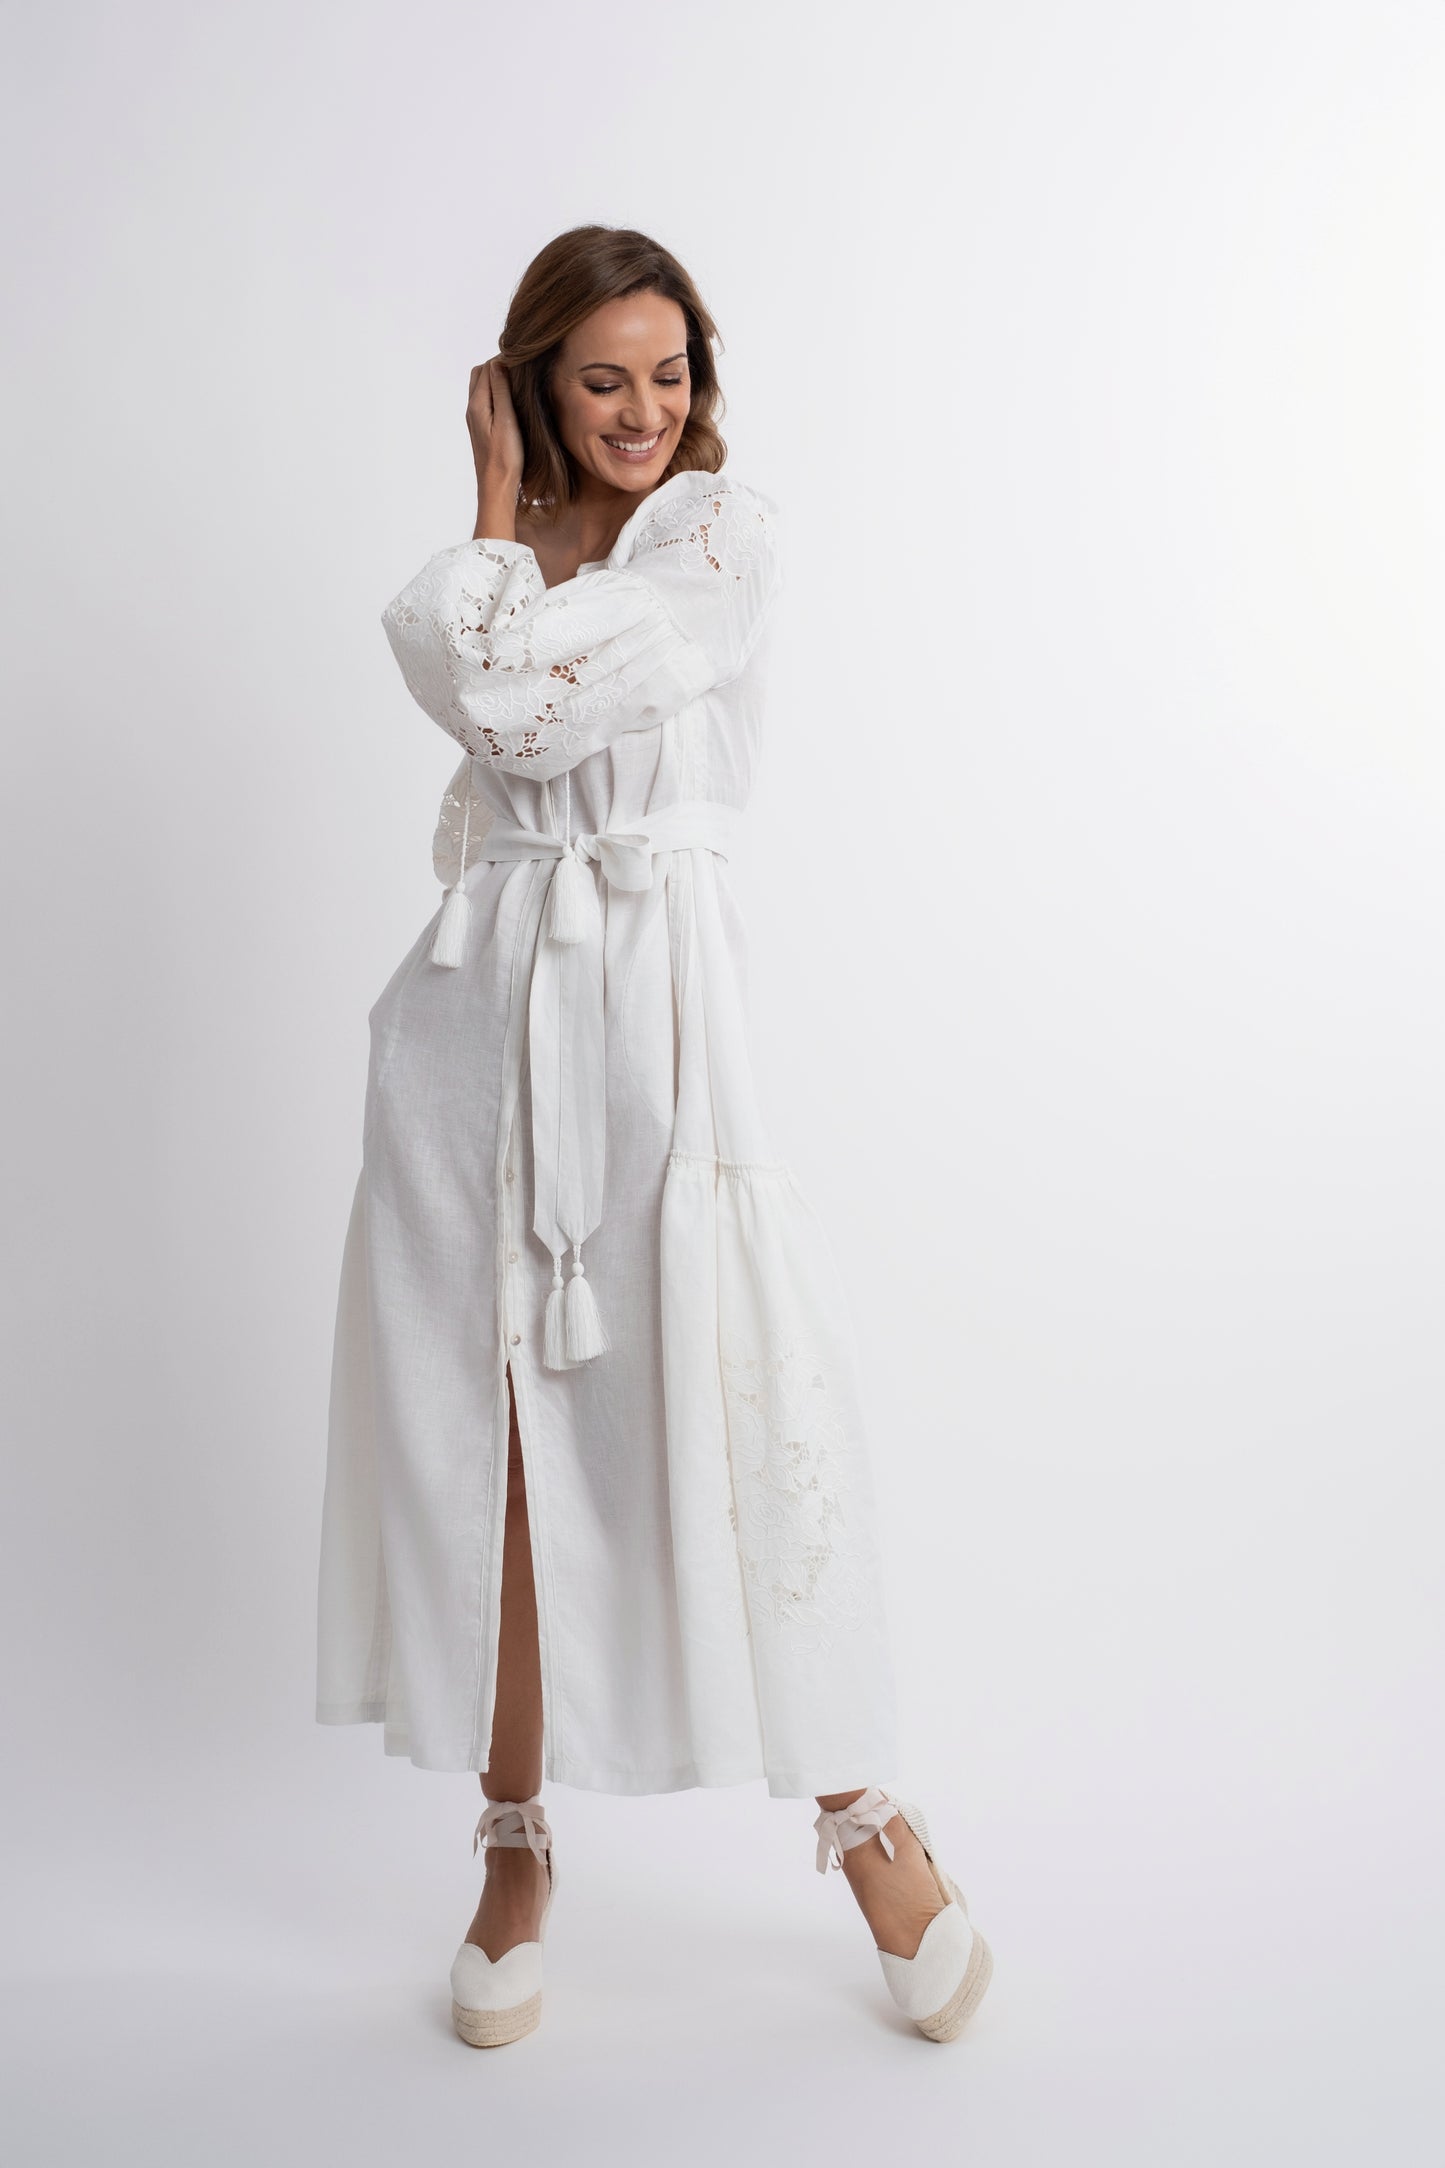 Capri: Vestido de lino blanco con cinturón, bordado suizo con pompones y botones de nácar.